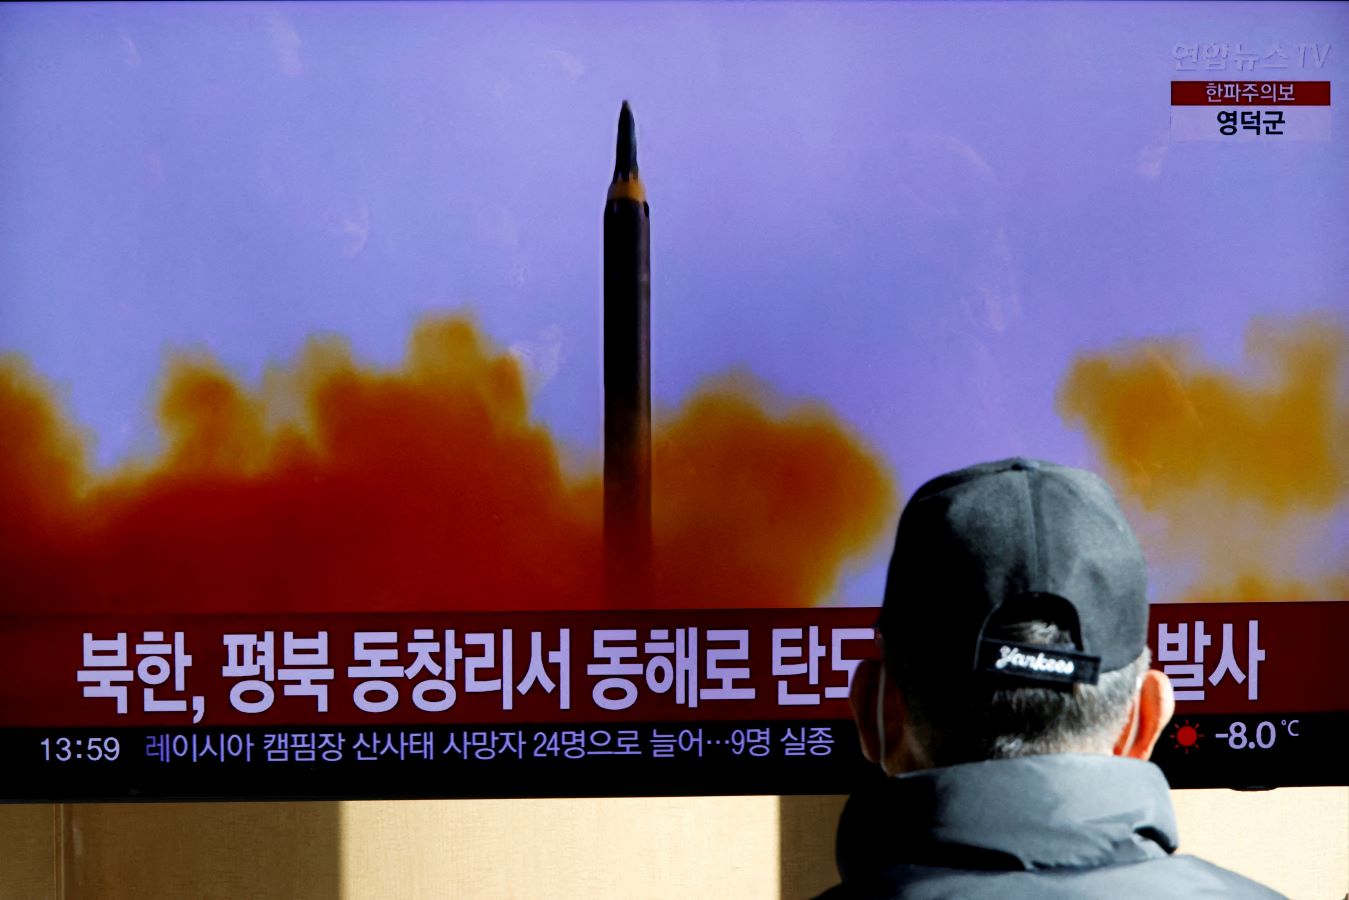 كوريا الشمالية تطلق صاروخاً بالستياً 